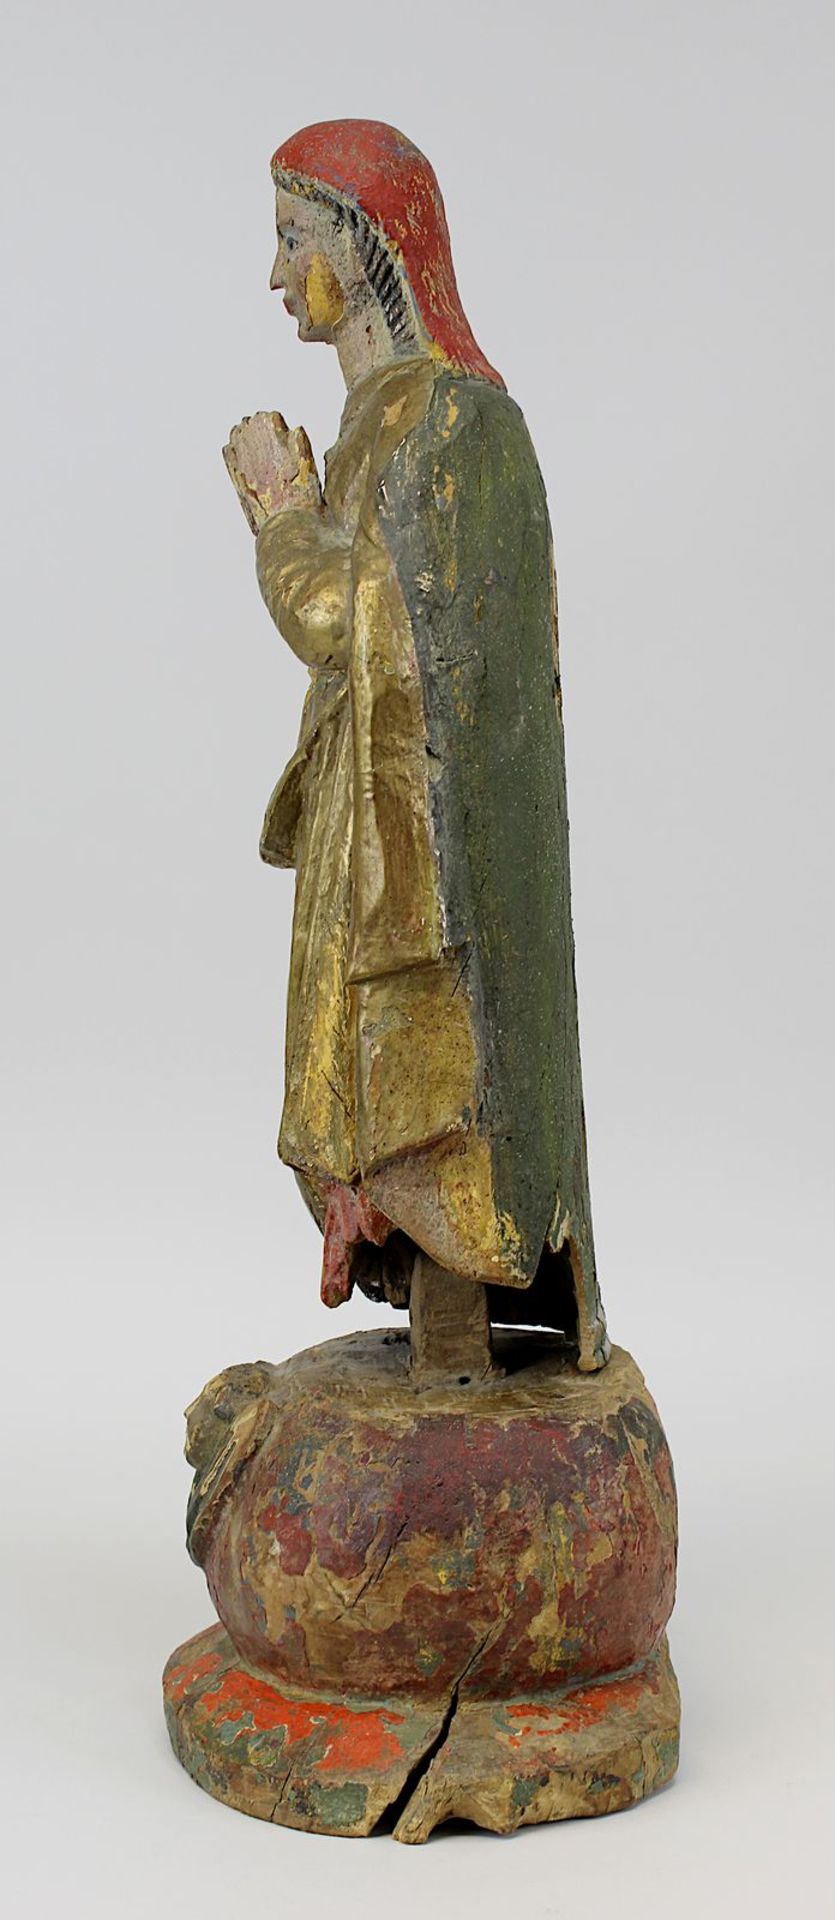 Heilige Maria, süddeutsch 17. Jh., Holz geschnitzt, farbig und gold gefasst, Fassung übergangen, auf - Bild 2 aus 4